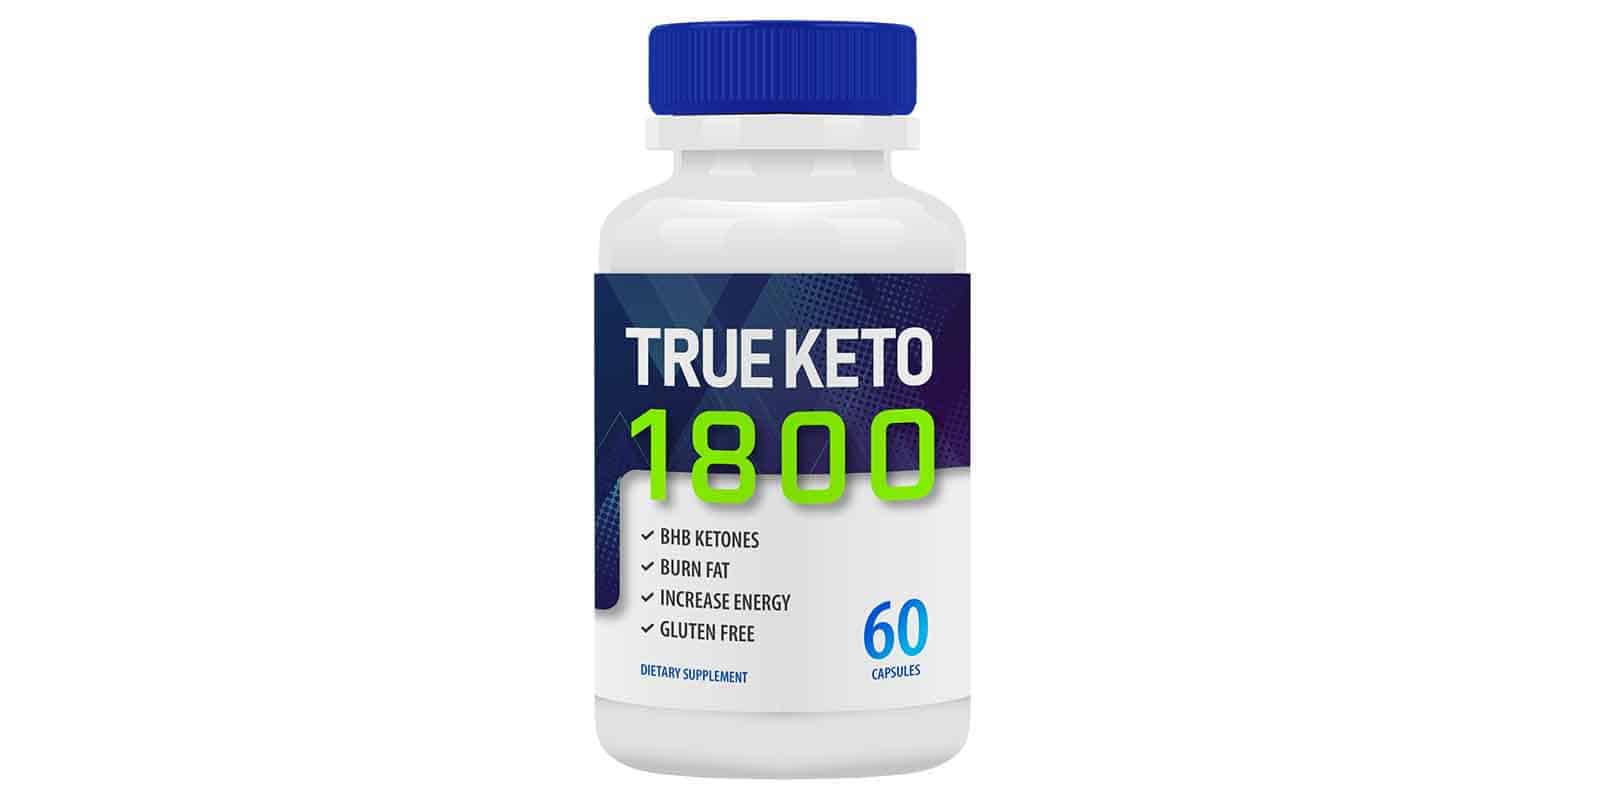 True-Keto-1800-Reviews